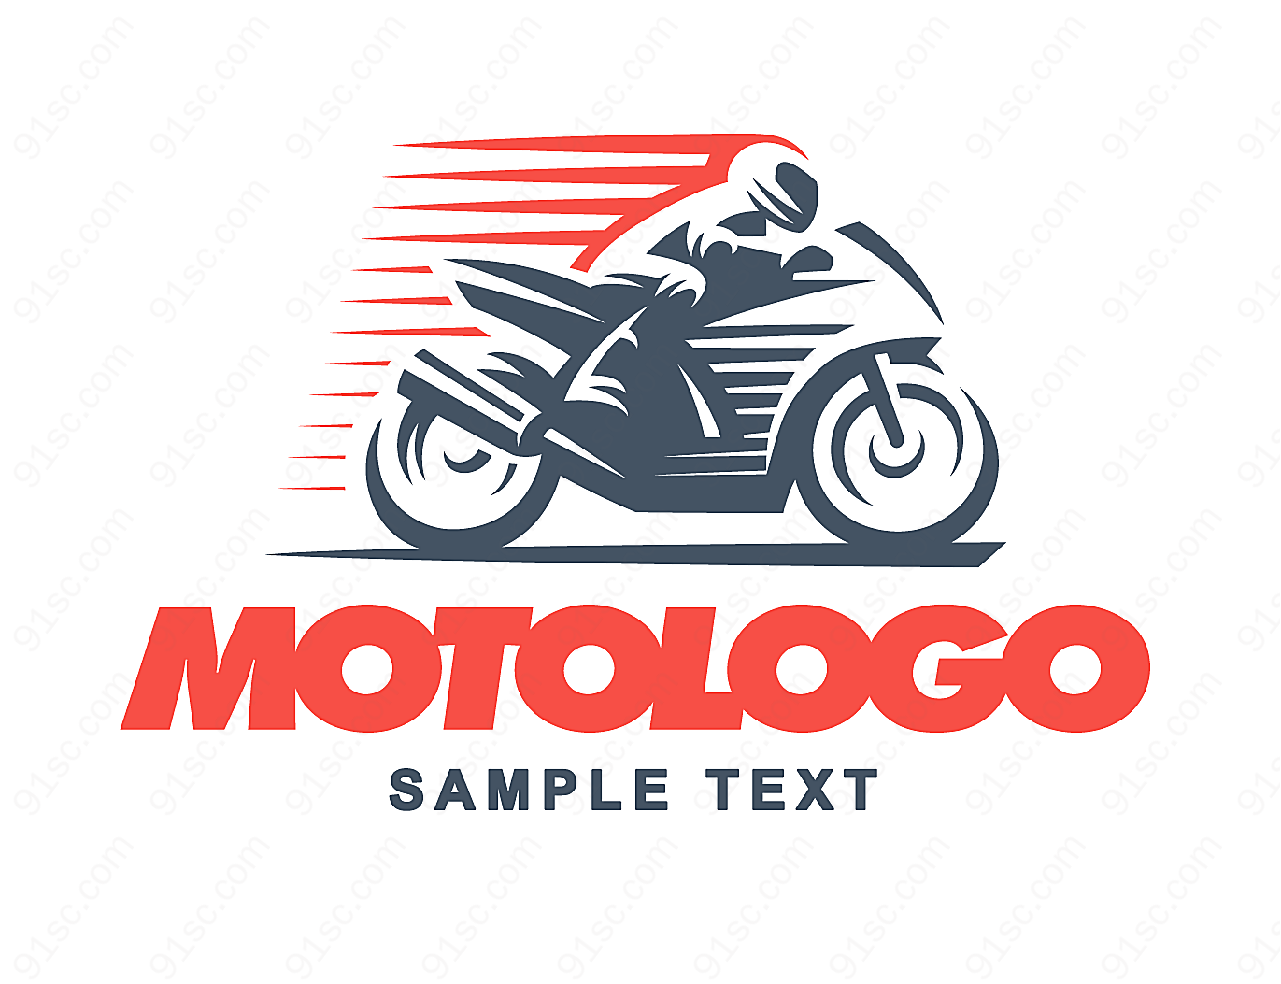 摩托赛车logo矢量logo图形